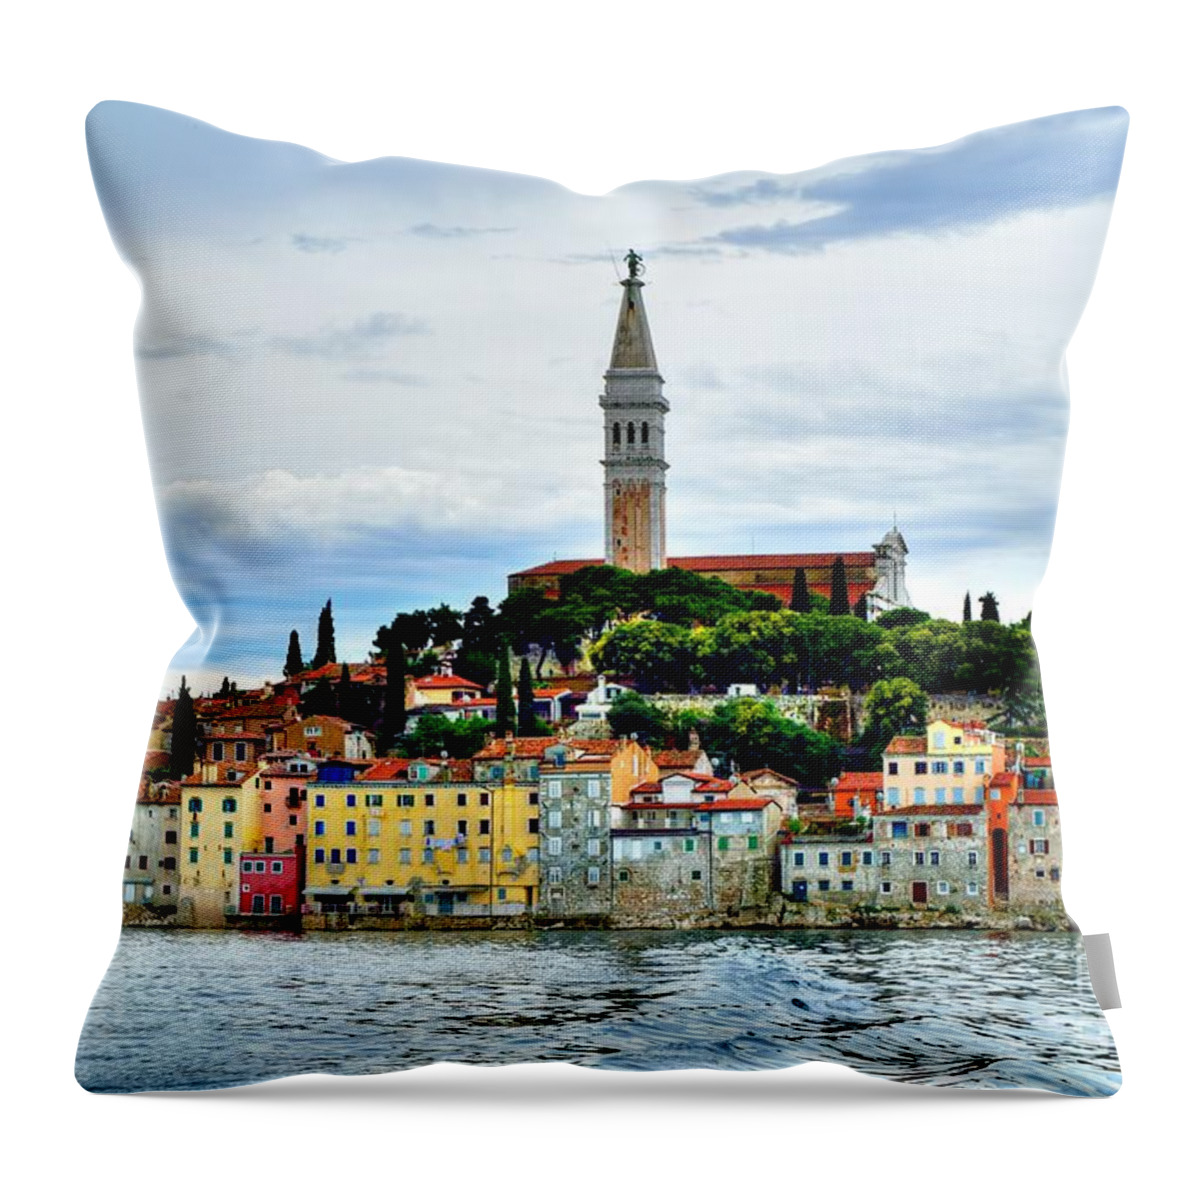 Top Artist Throw Pillow featuring the photograph Venetian Fortress of Rovinj by Norman Gabitzsch